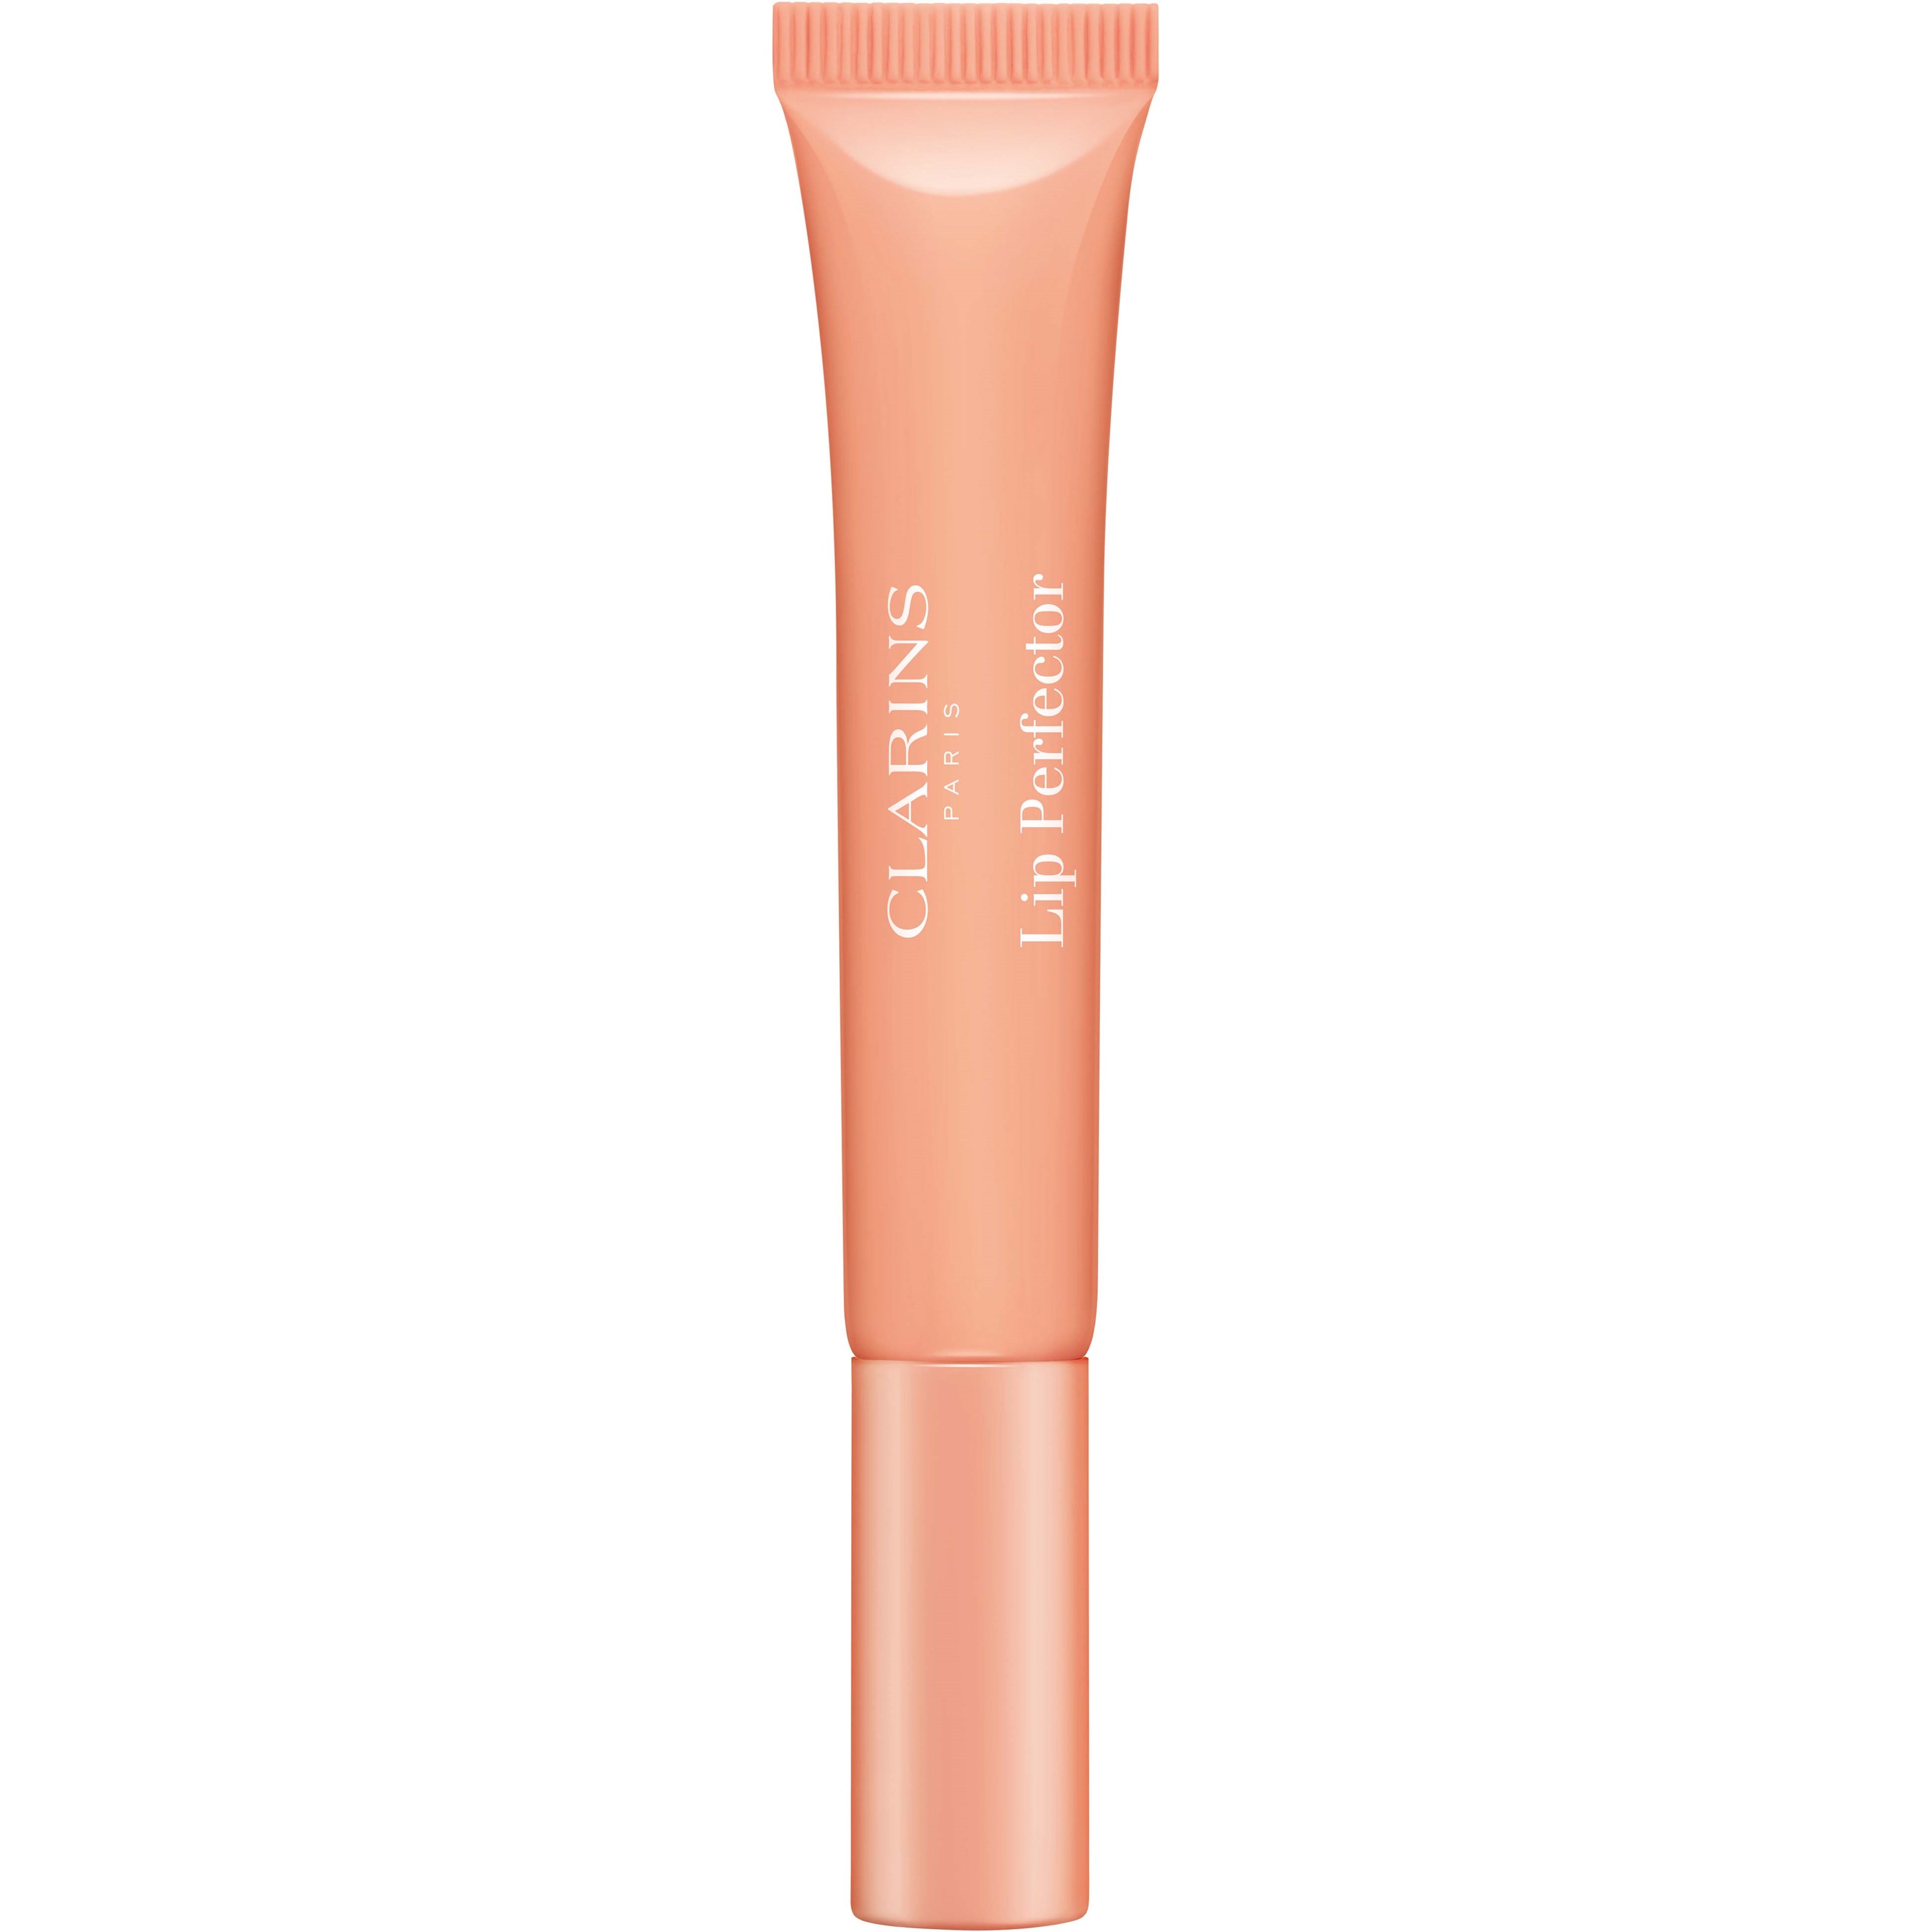 Bilde av Clarins Natural Lip Perfector 02 Apricot Shimmer